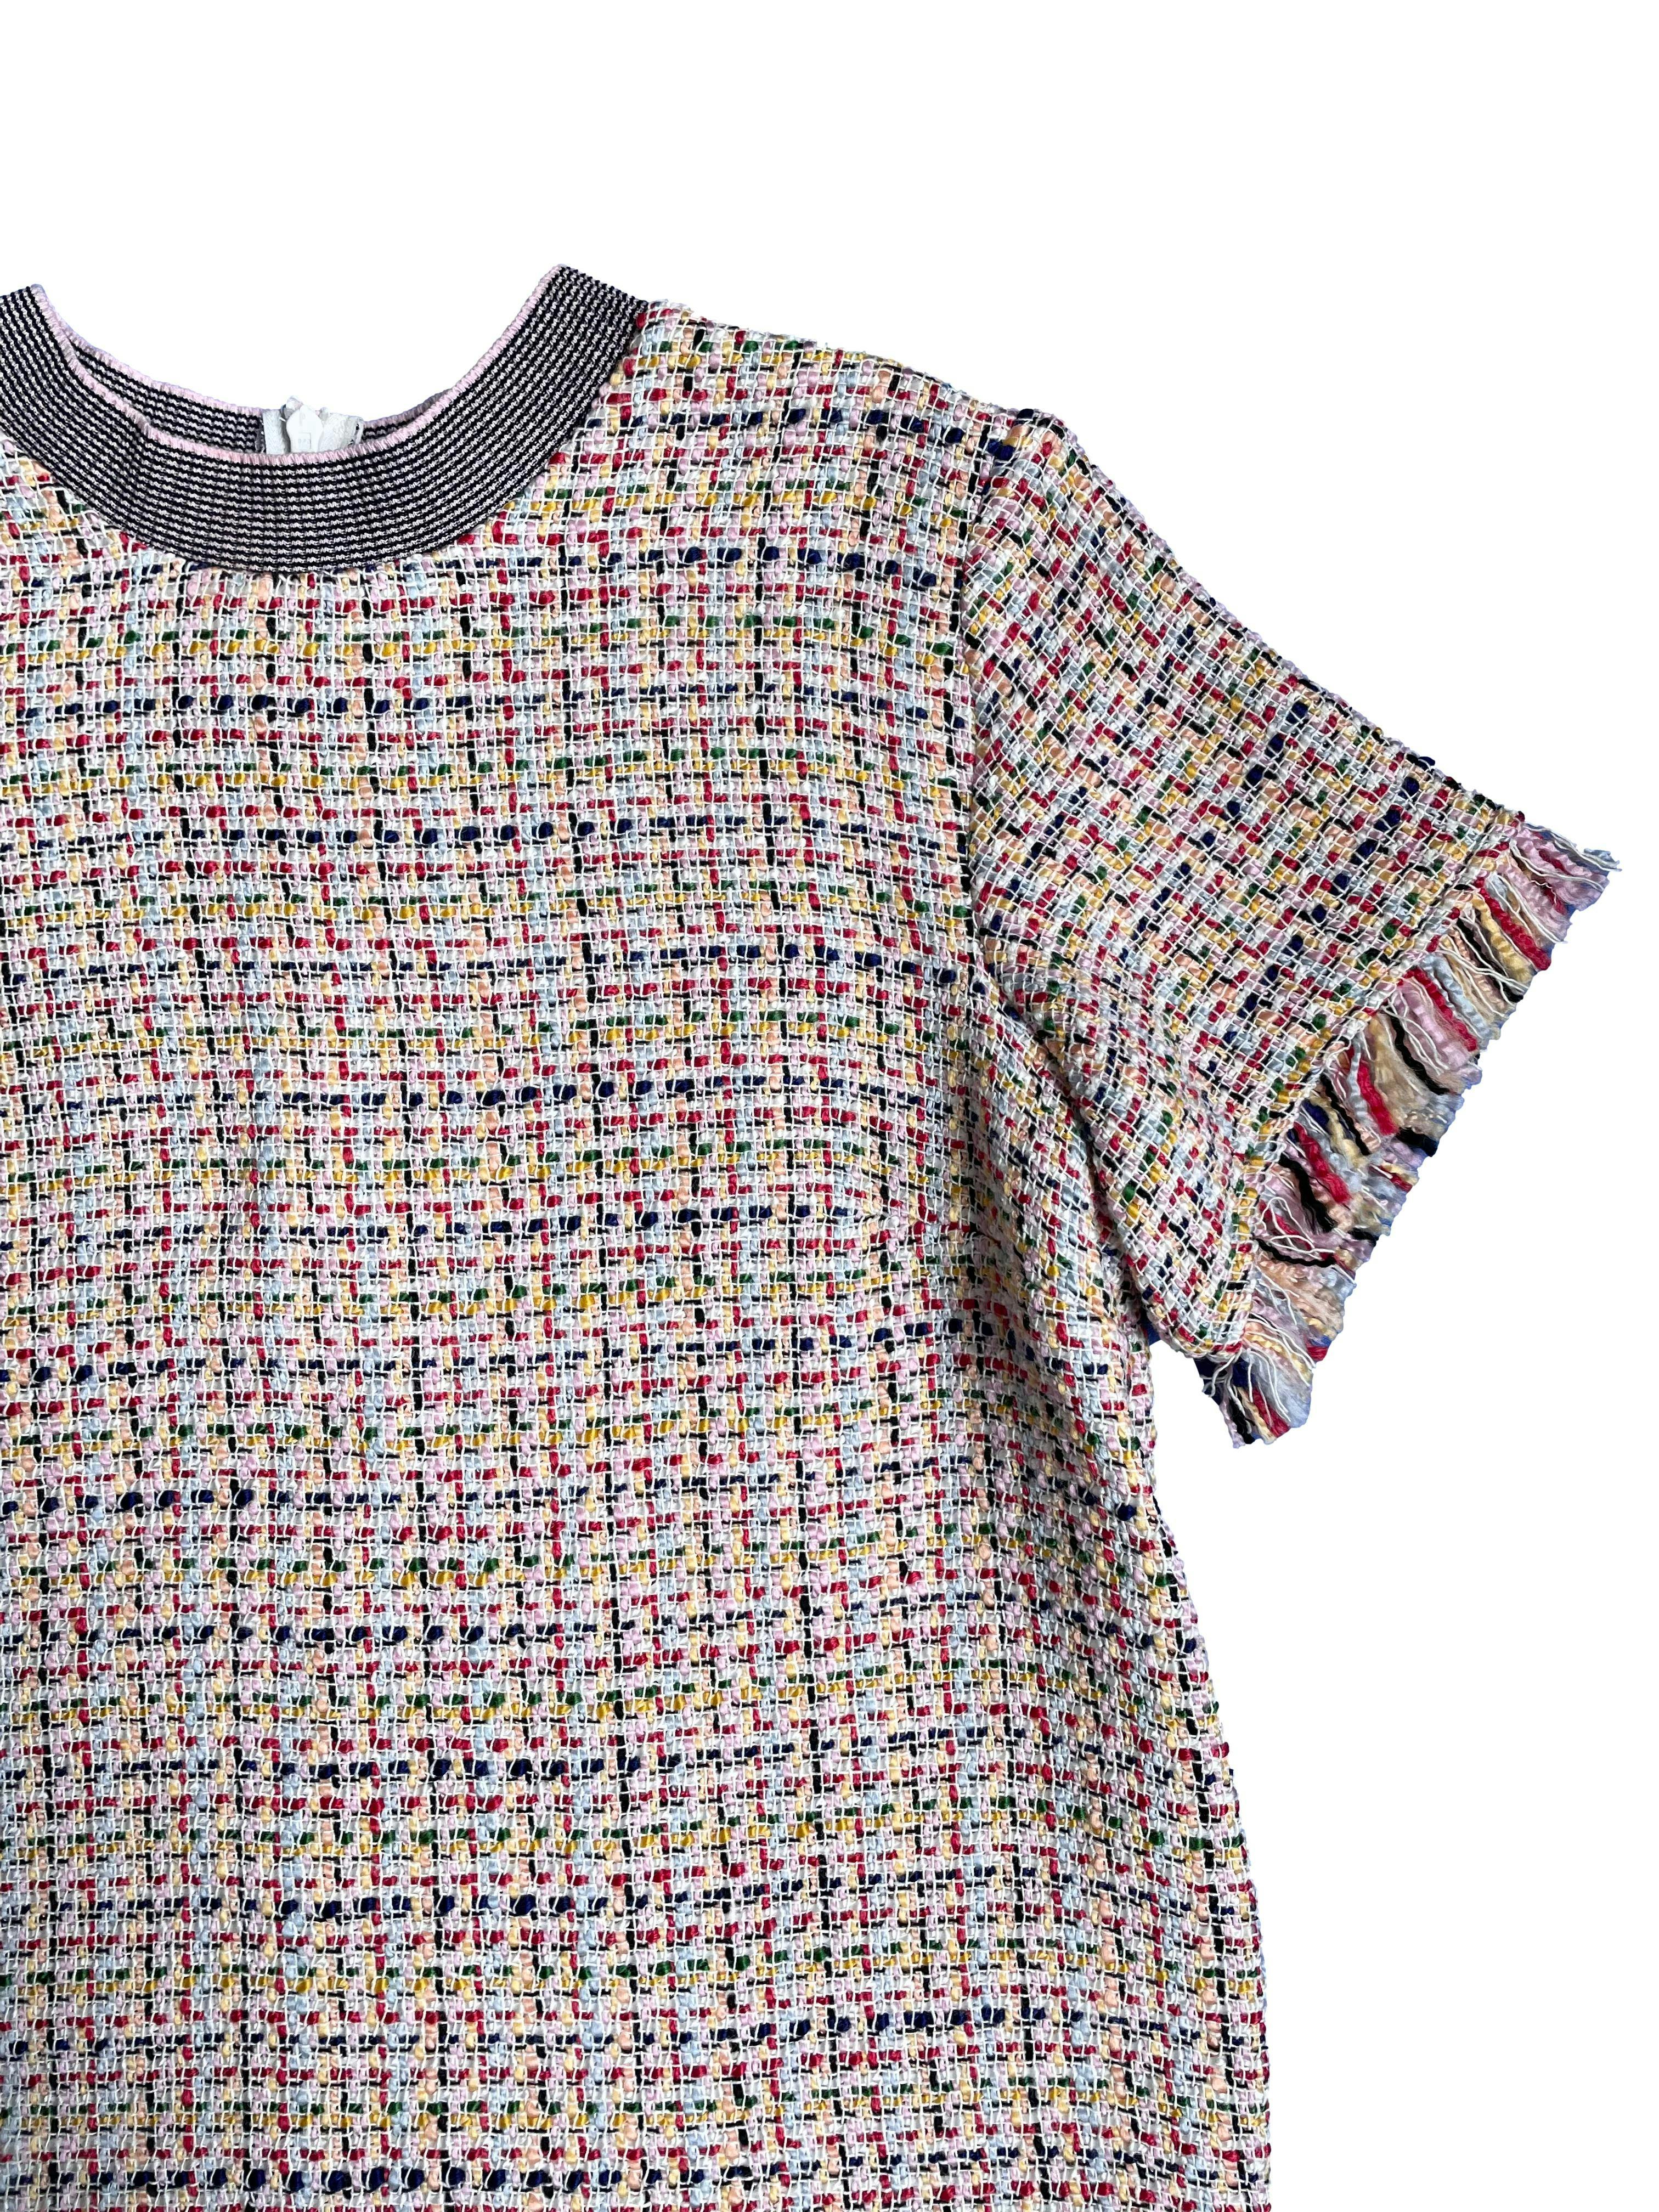 Blusa Zara de tweed multicolor con cierre en espalda, flecos en mangas y basta. Busto 100cm Largo 55cm